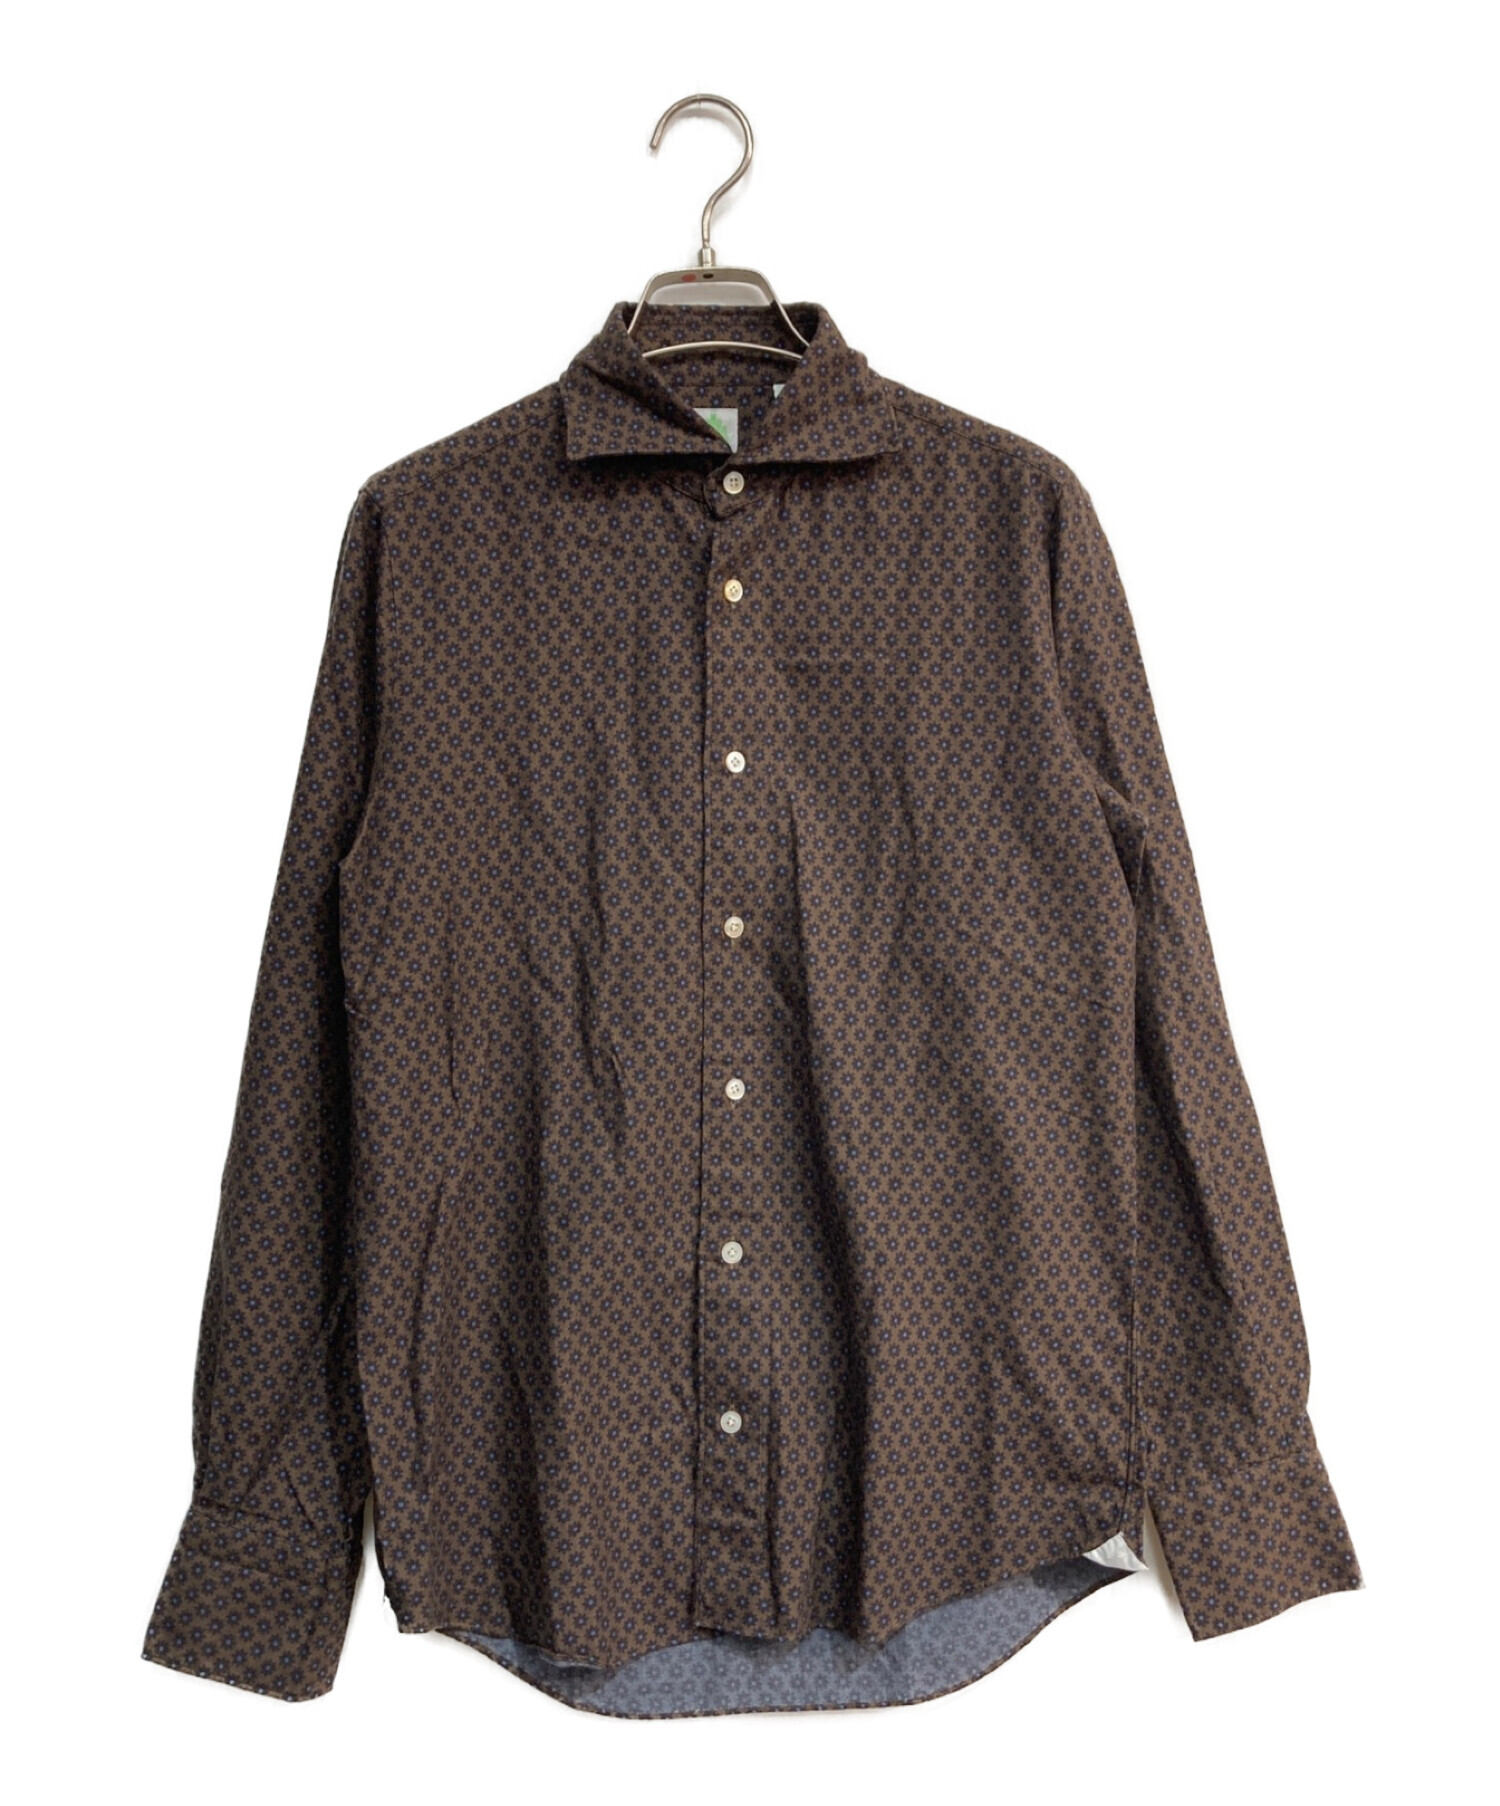 finamore (フィナモレ) 総柄ホリゾンタルカラーシャツ ブラウン サイズ:S 未使用品